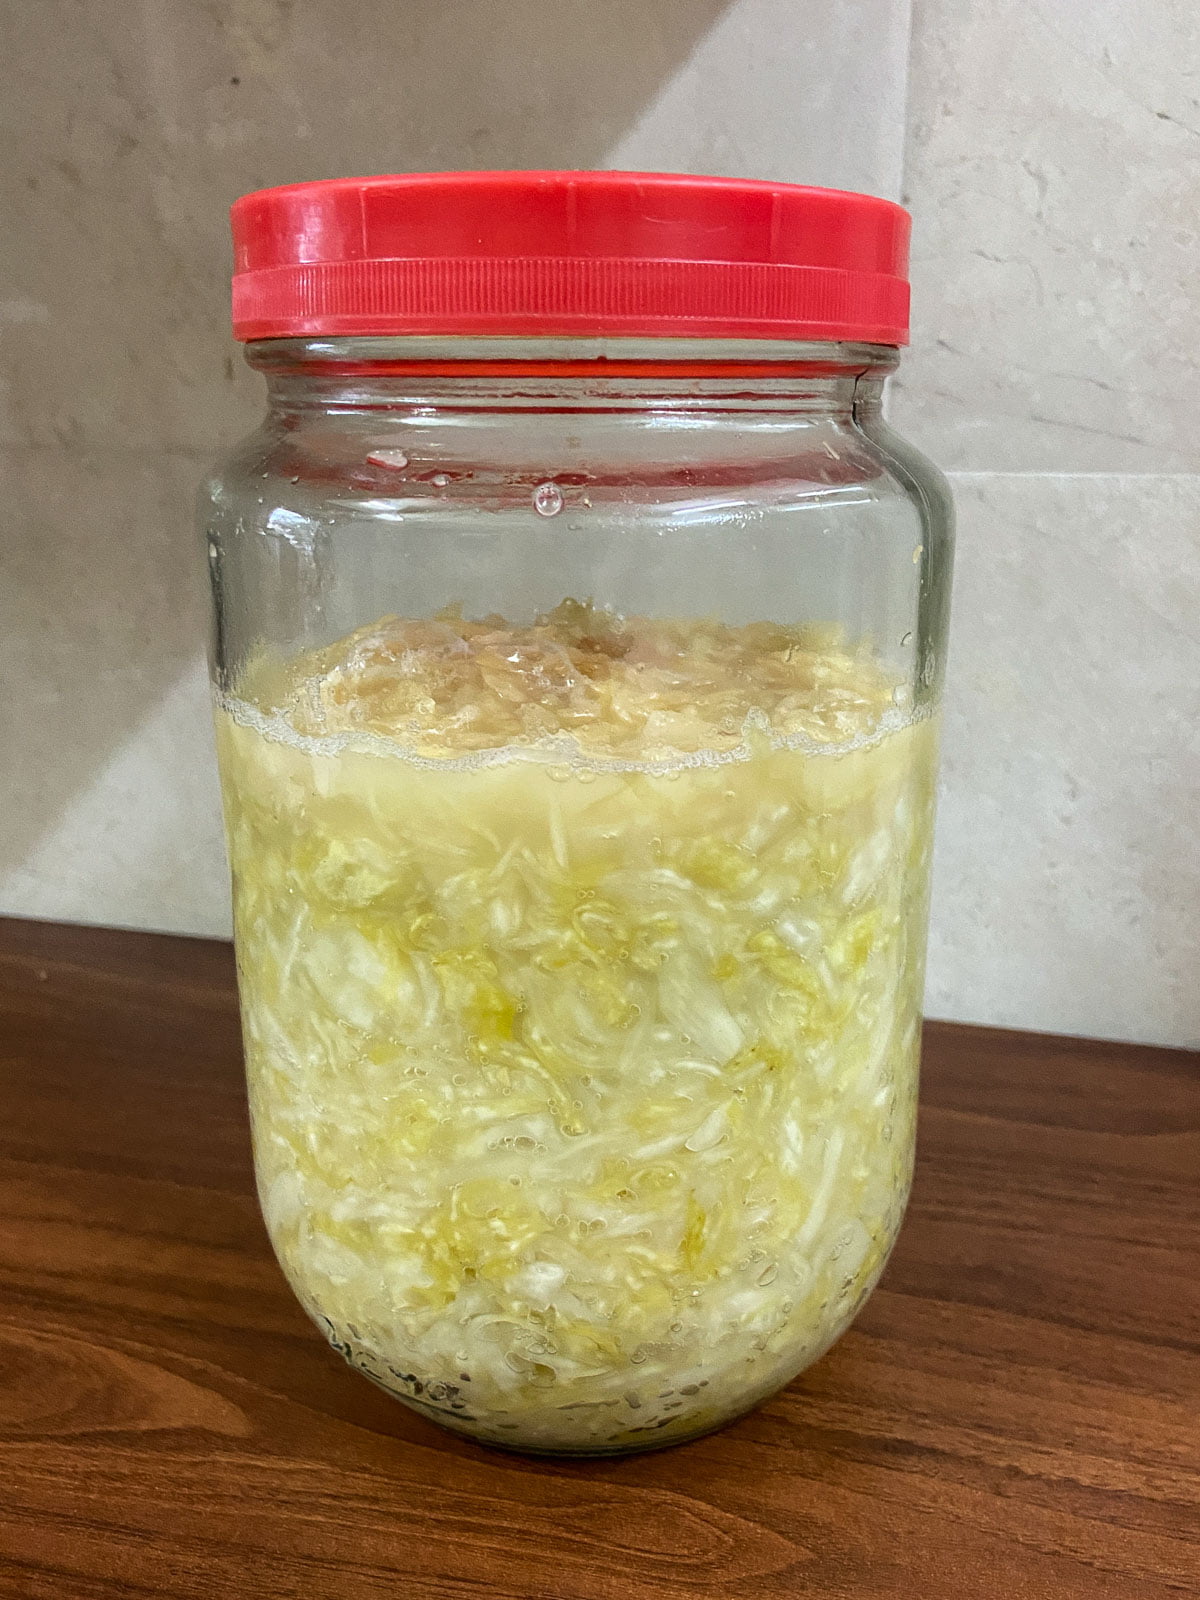 Einmachglas mit fertig fermentiertem Sauerkraut - Pickle jar with fully fermented Sauerkraut